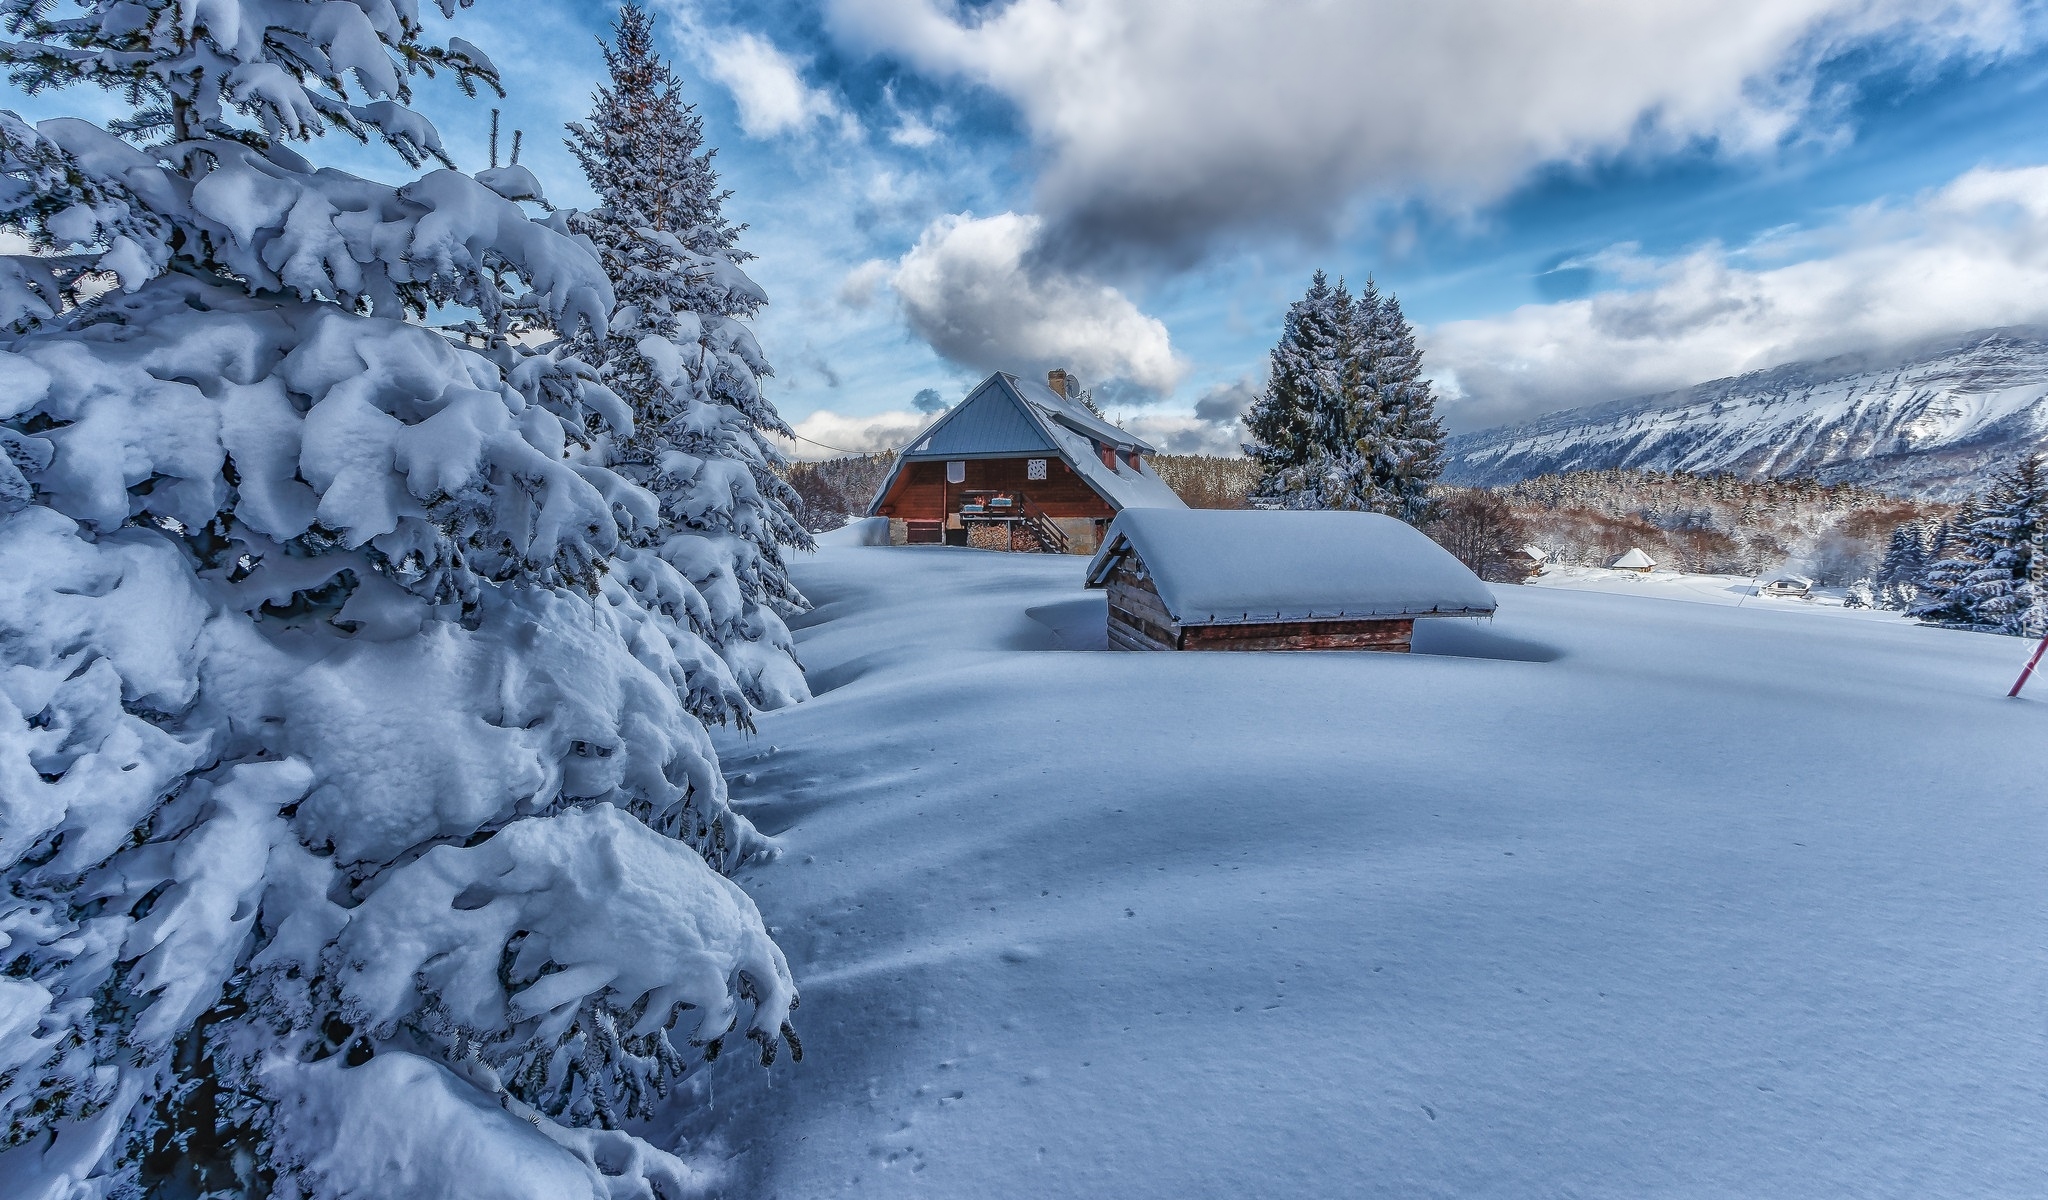 Zima, Śnieg, Drzewa, Domy